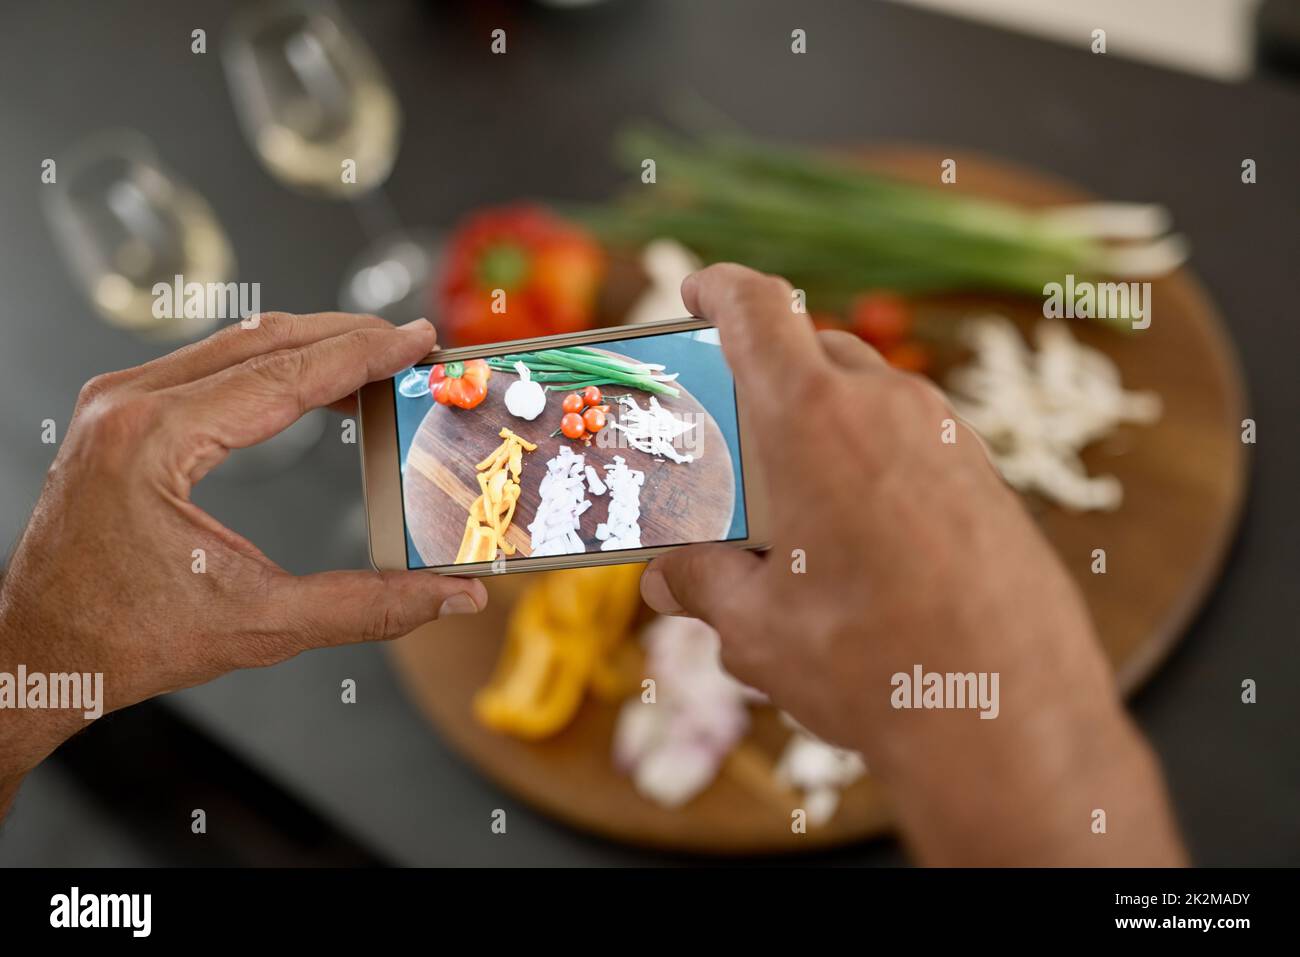 Cette image doit être partagée en ligne. Photo d'un homme prenant une photo des ingrédients avec son téléphone. Banque D'Images